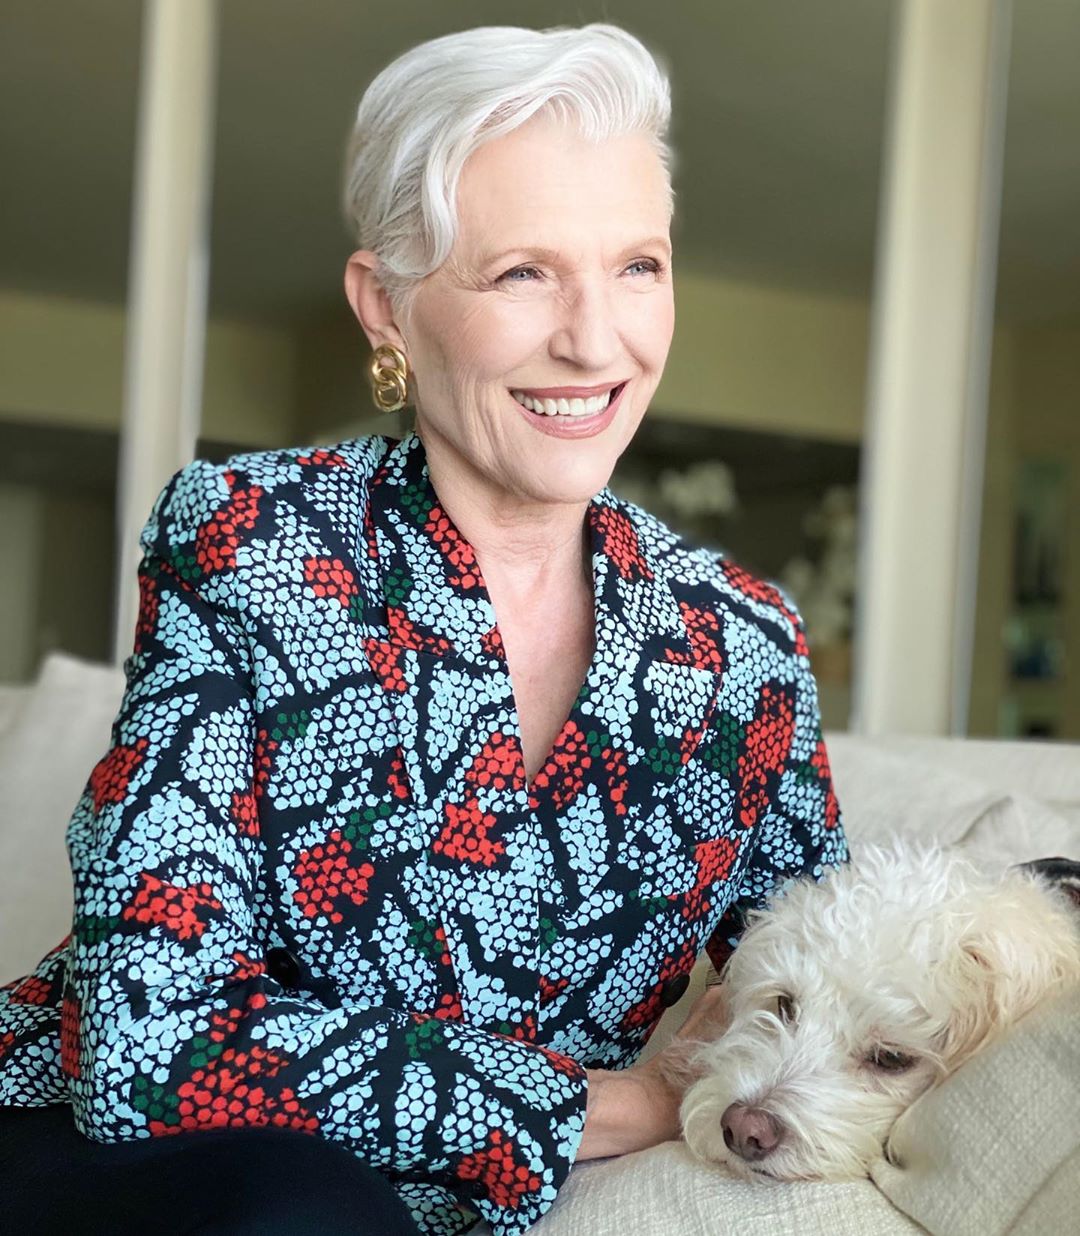 Cụ bà 72 tuổi chia sẻ 3 bước skincare quan trọng nhất cuộc đời: 'Mới 15 tuổi, tôi đã biết chống nắng từ đầu tới chân' - Ảnh 3